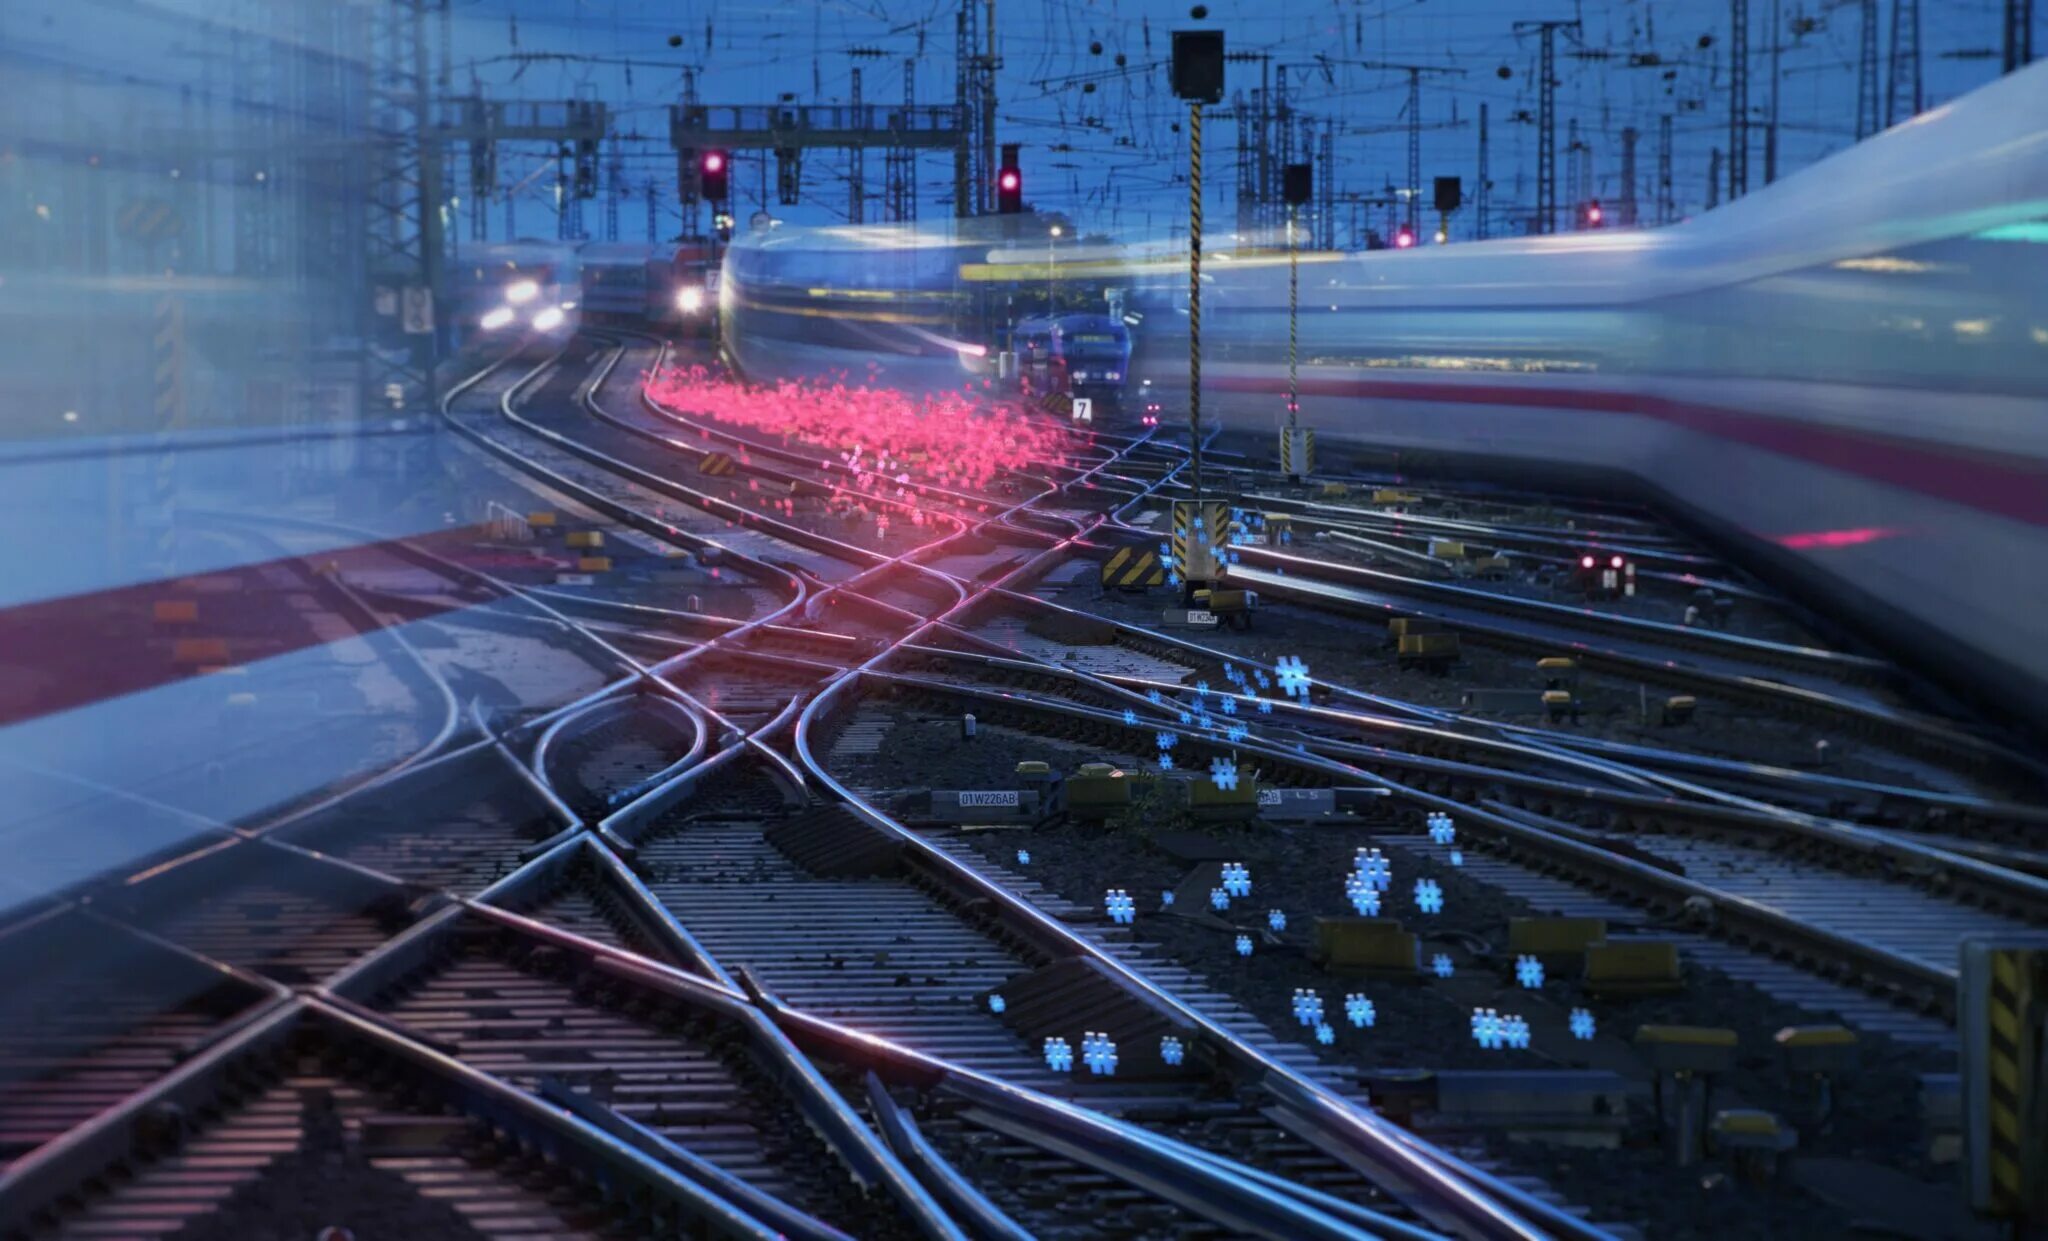 Цифровая Железнодорожная станция проект РЖД. Инновации на Железнодорожном транспорте. Инфраструктура железных дорог. Железная дорога инновации. Включи железную станцию